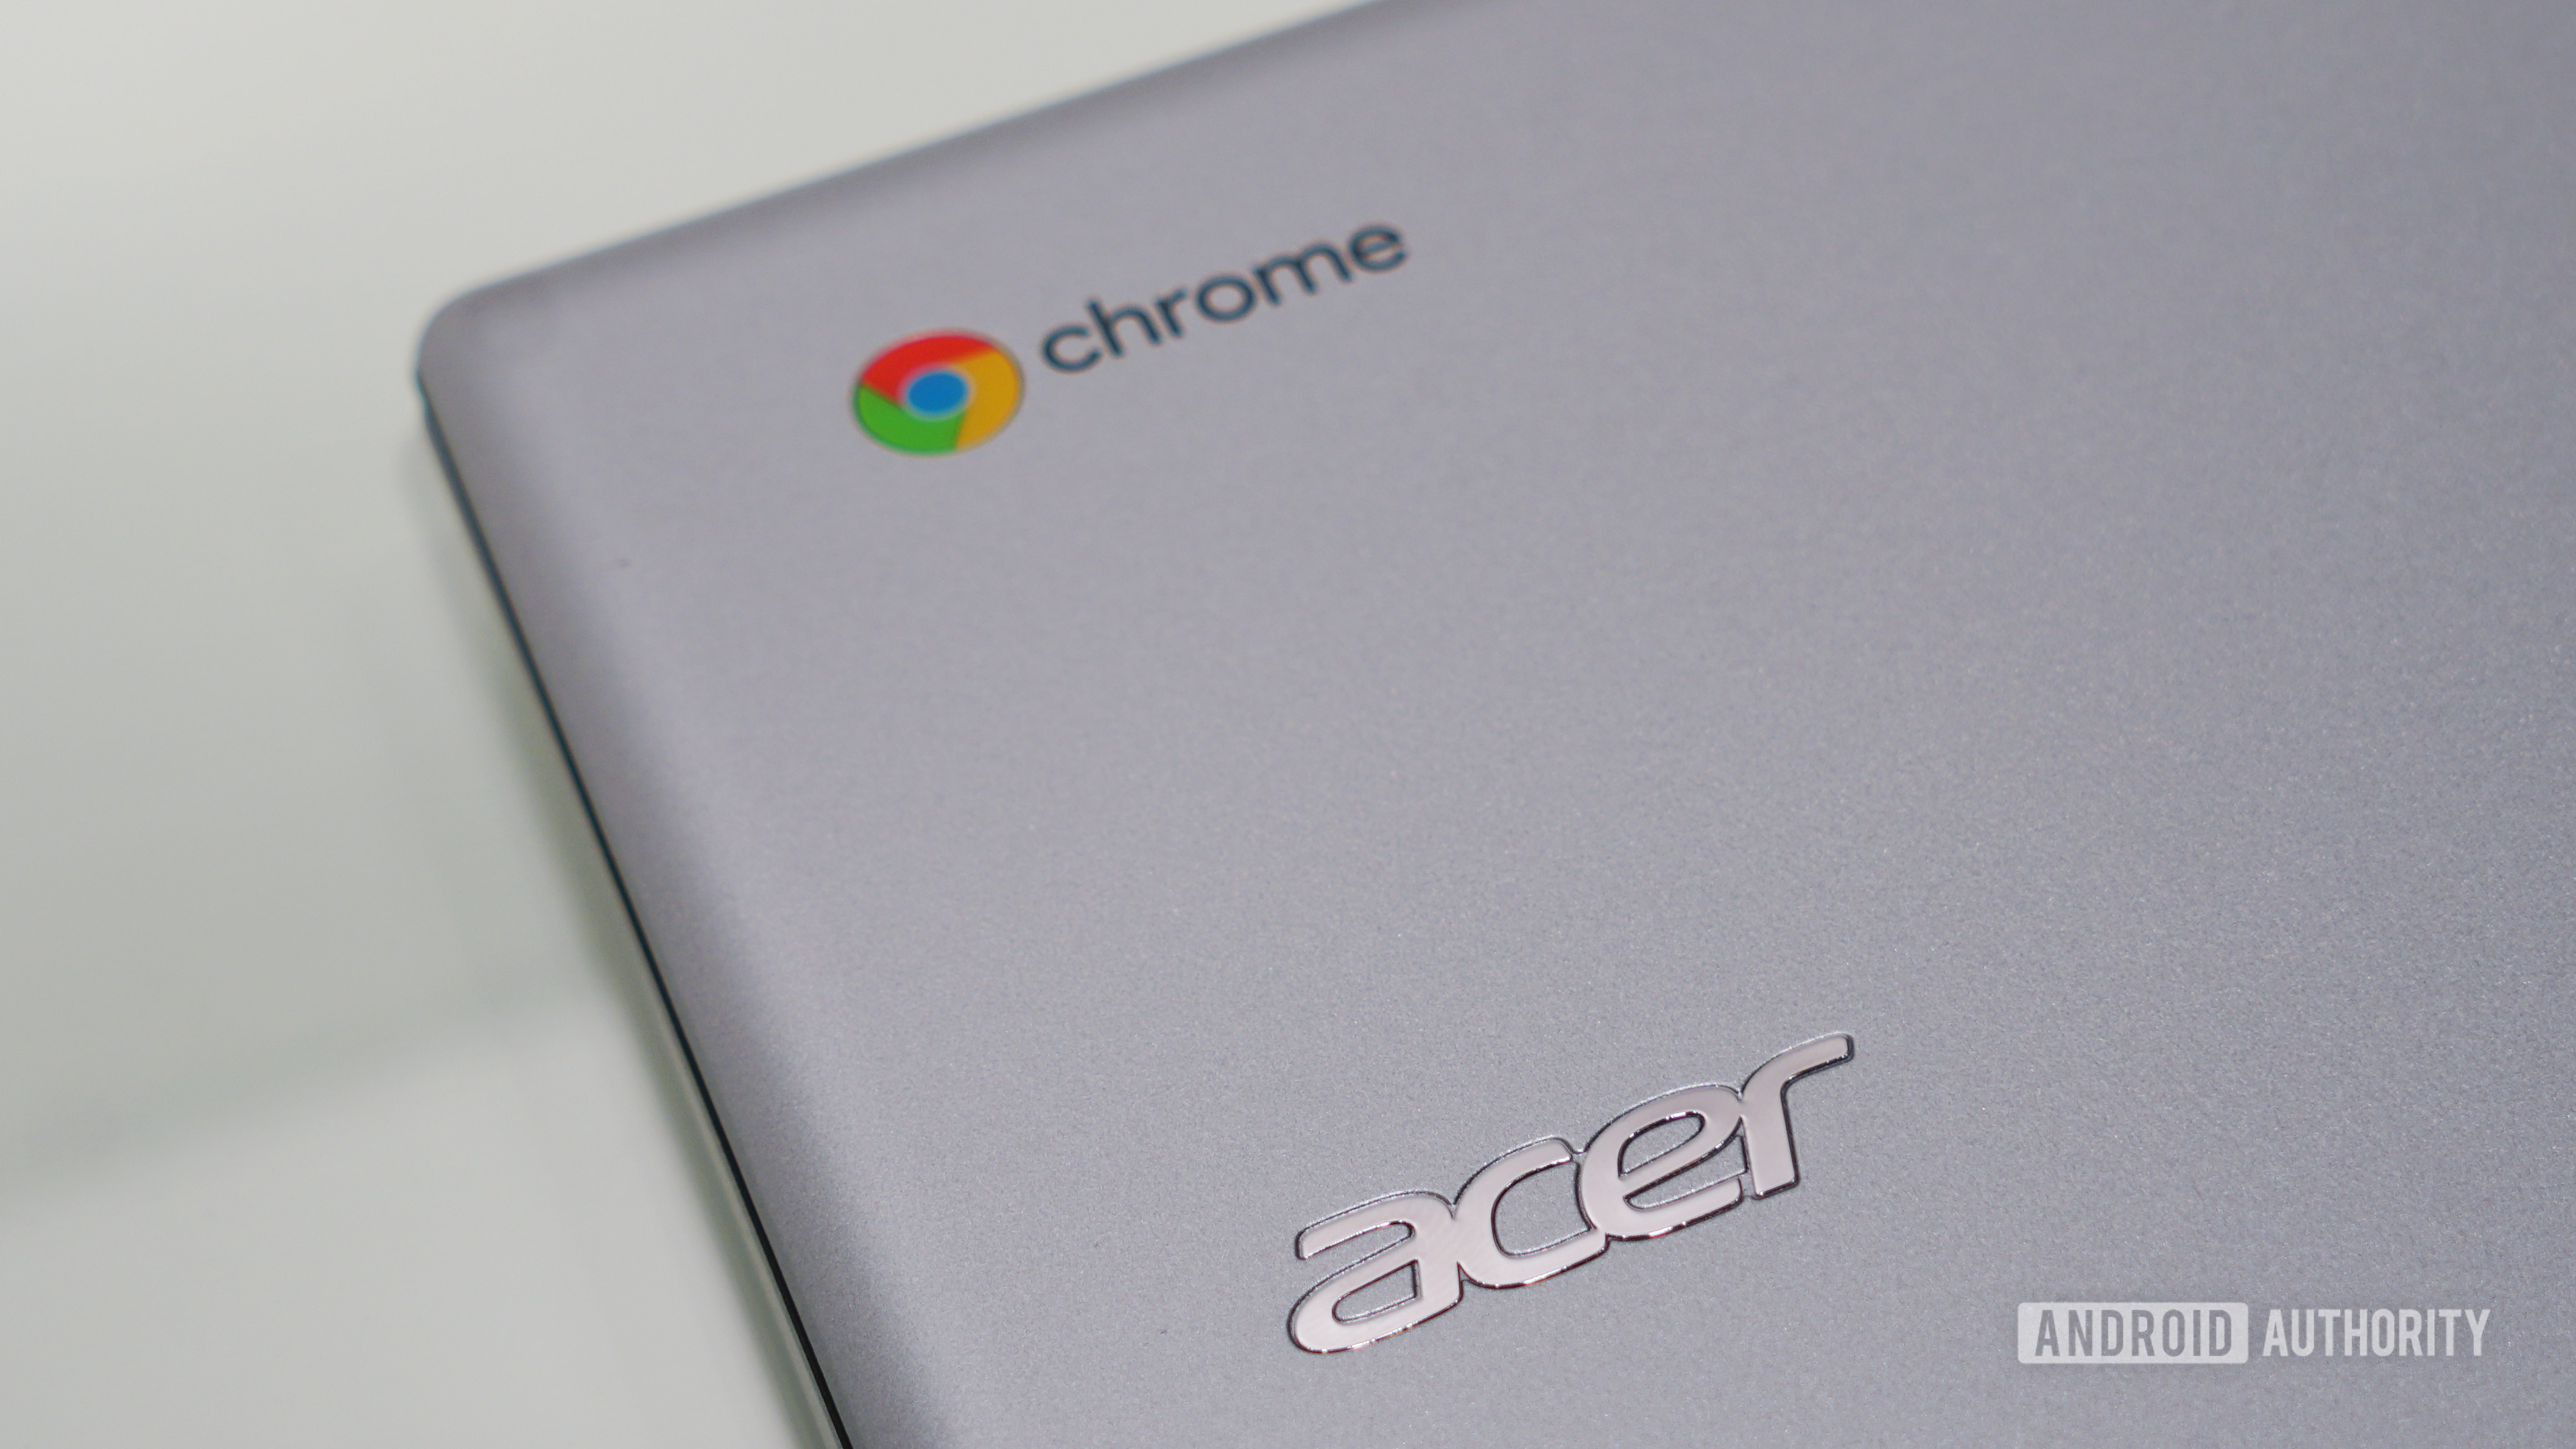 Chromebook上的Acer Chrome徽标